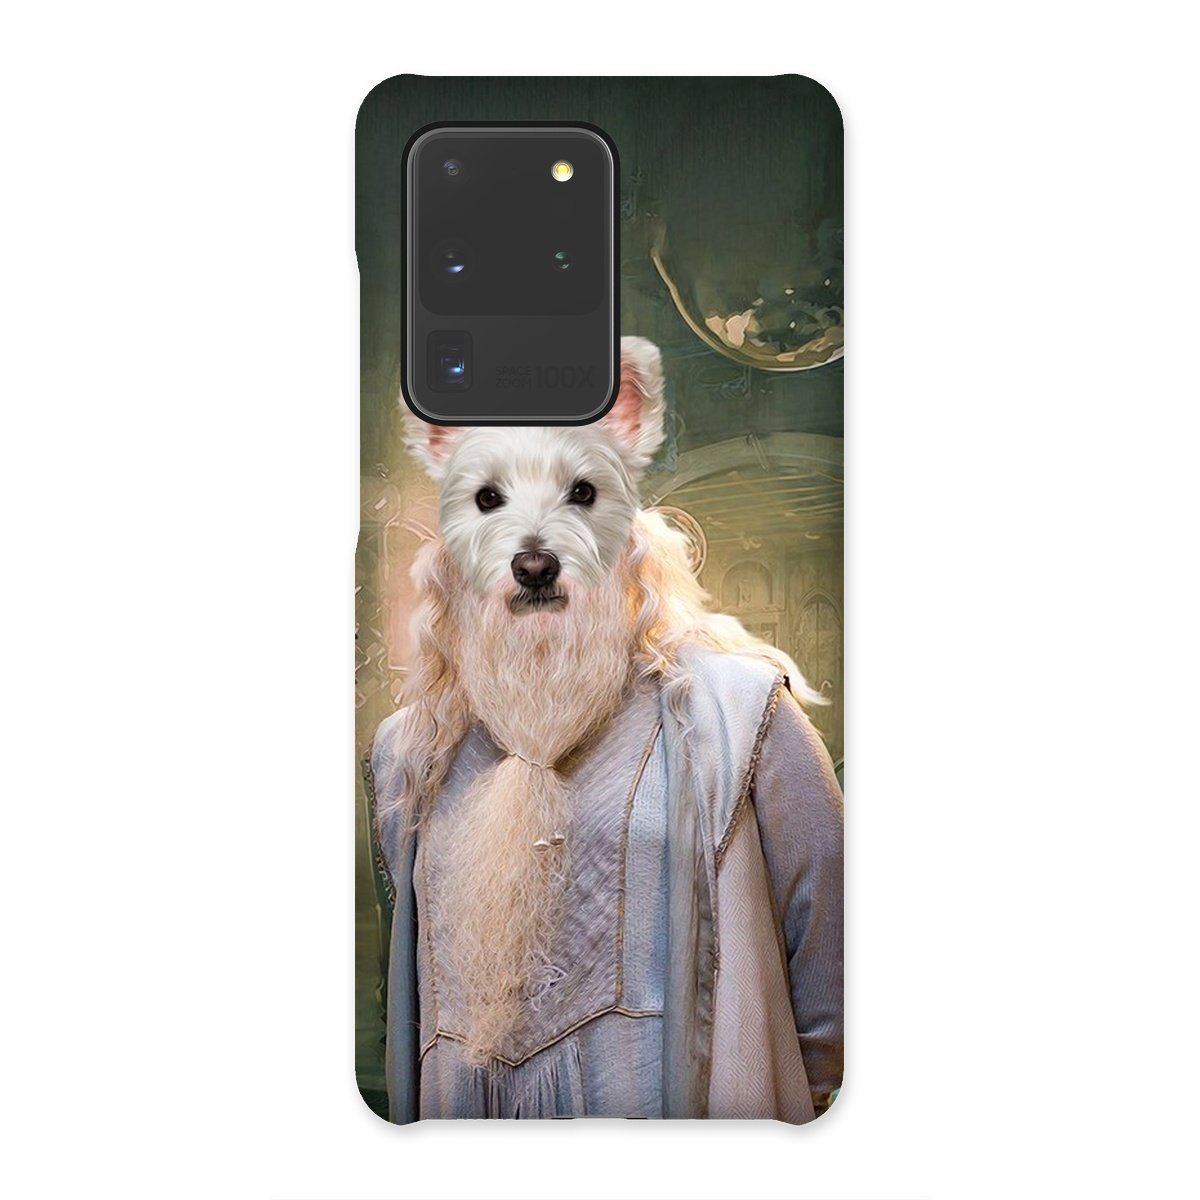 Dumbledore (Harry Potter Inspired): Custom Pet Phone Case - Paw & Glory - pawandglory, personalised dog phone case, phone case dog, custom dog phone case, personalized dog phone case, pet phone case, personalized iphone 11 case dogs, Pet Portrait phone case,